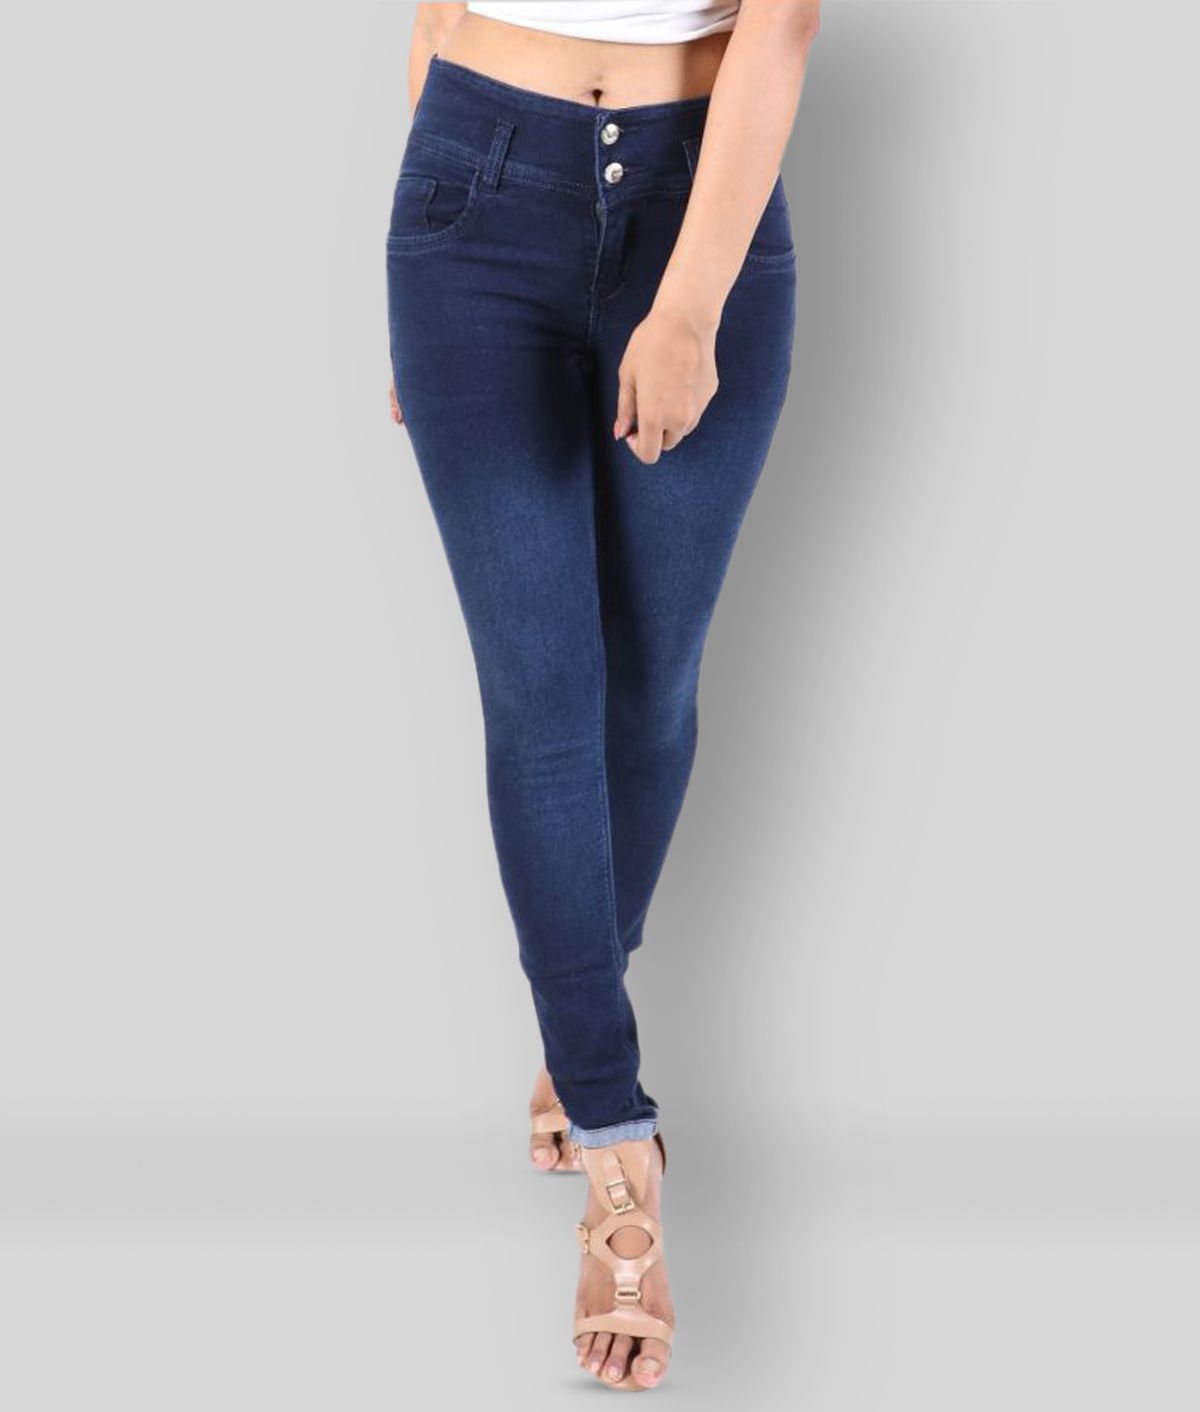 NiNe-Xm -  Navy Blue Denim Women's Jeans ( Pack of 1 )